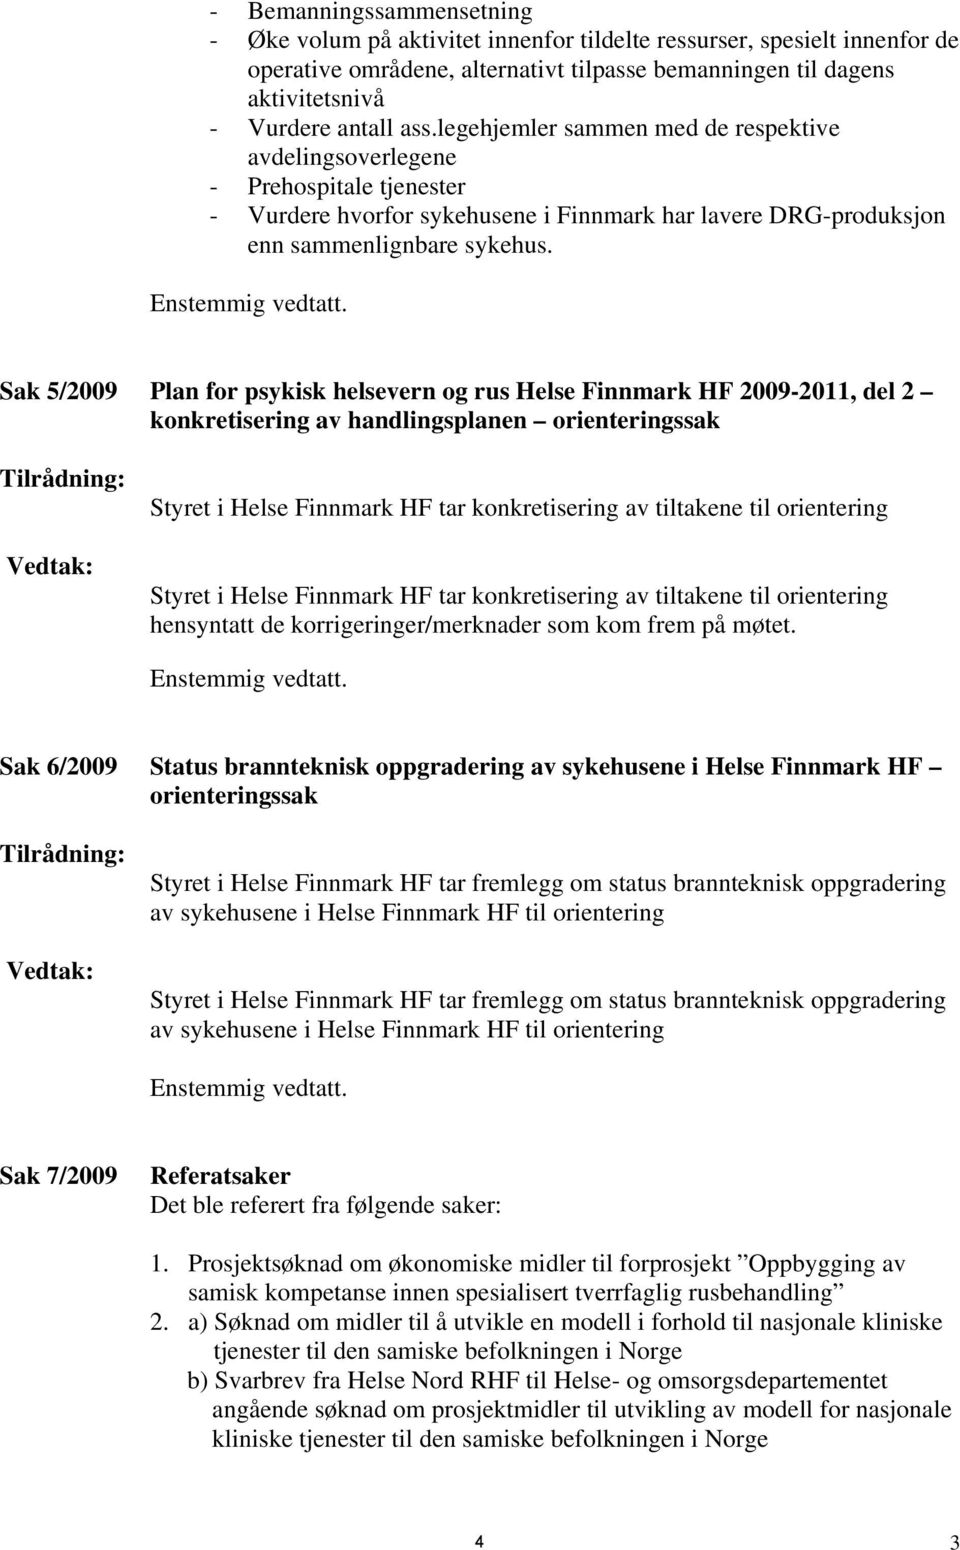 Sak 5/2009 Plan for psykisk helsevern og rus Helse Finnmark HF 2009-2011, del 2 konkretisering av handlingsplanen orienteringssak Tilrådning: Vedtak: Styret i Helse Finnmark HF tar konkretisering av